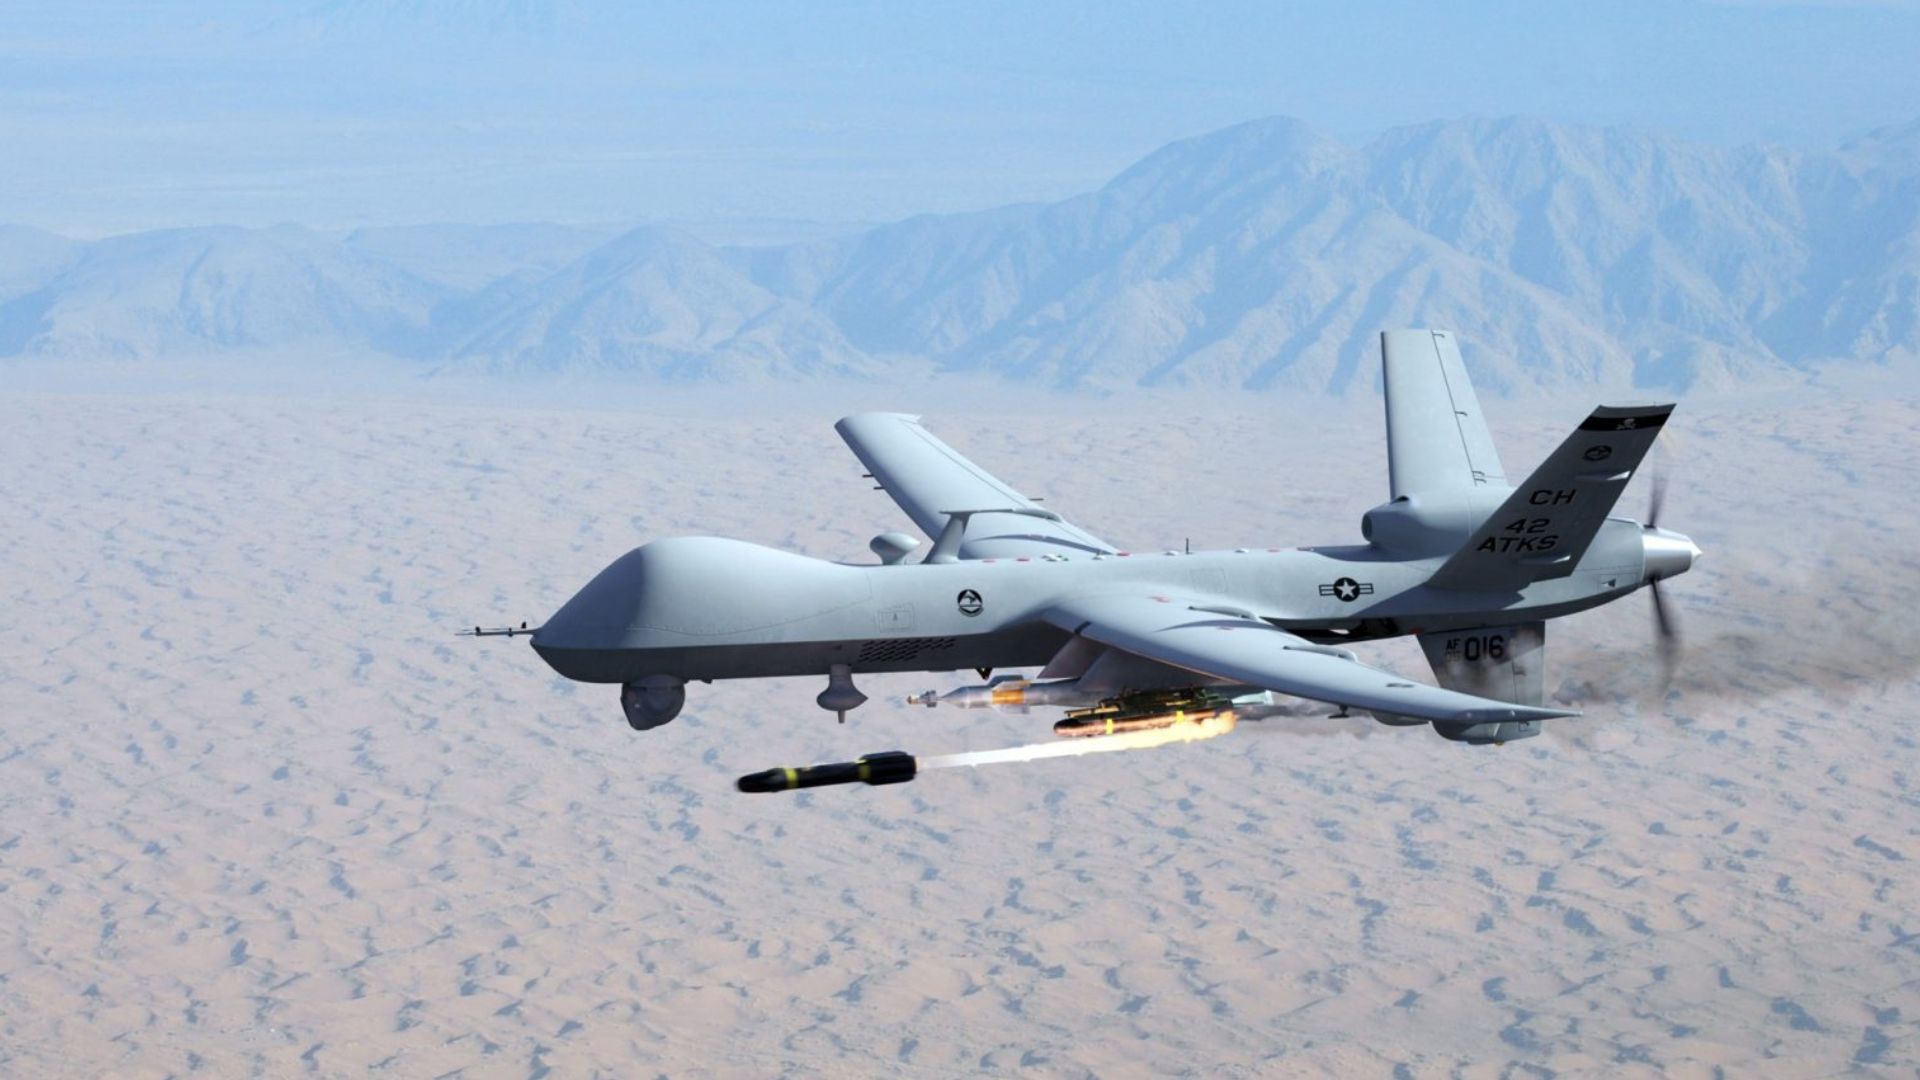 MQ-9 drone firing a missile